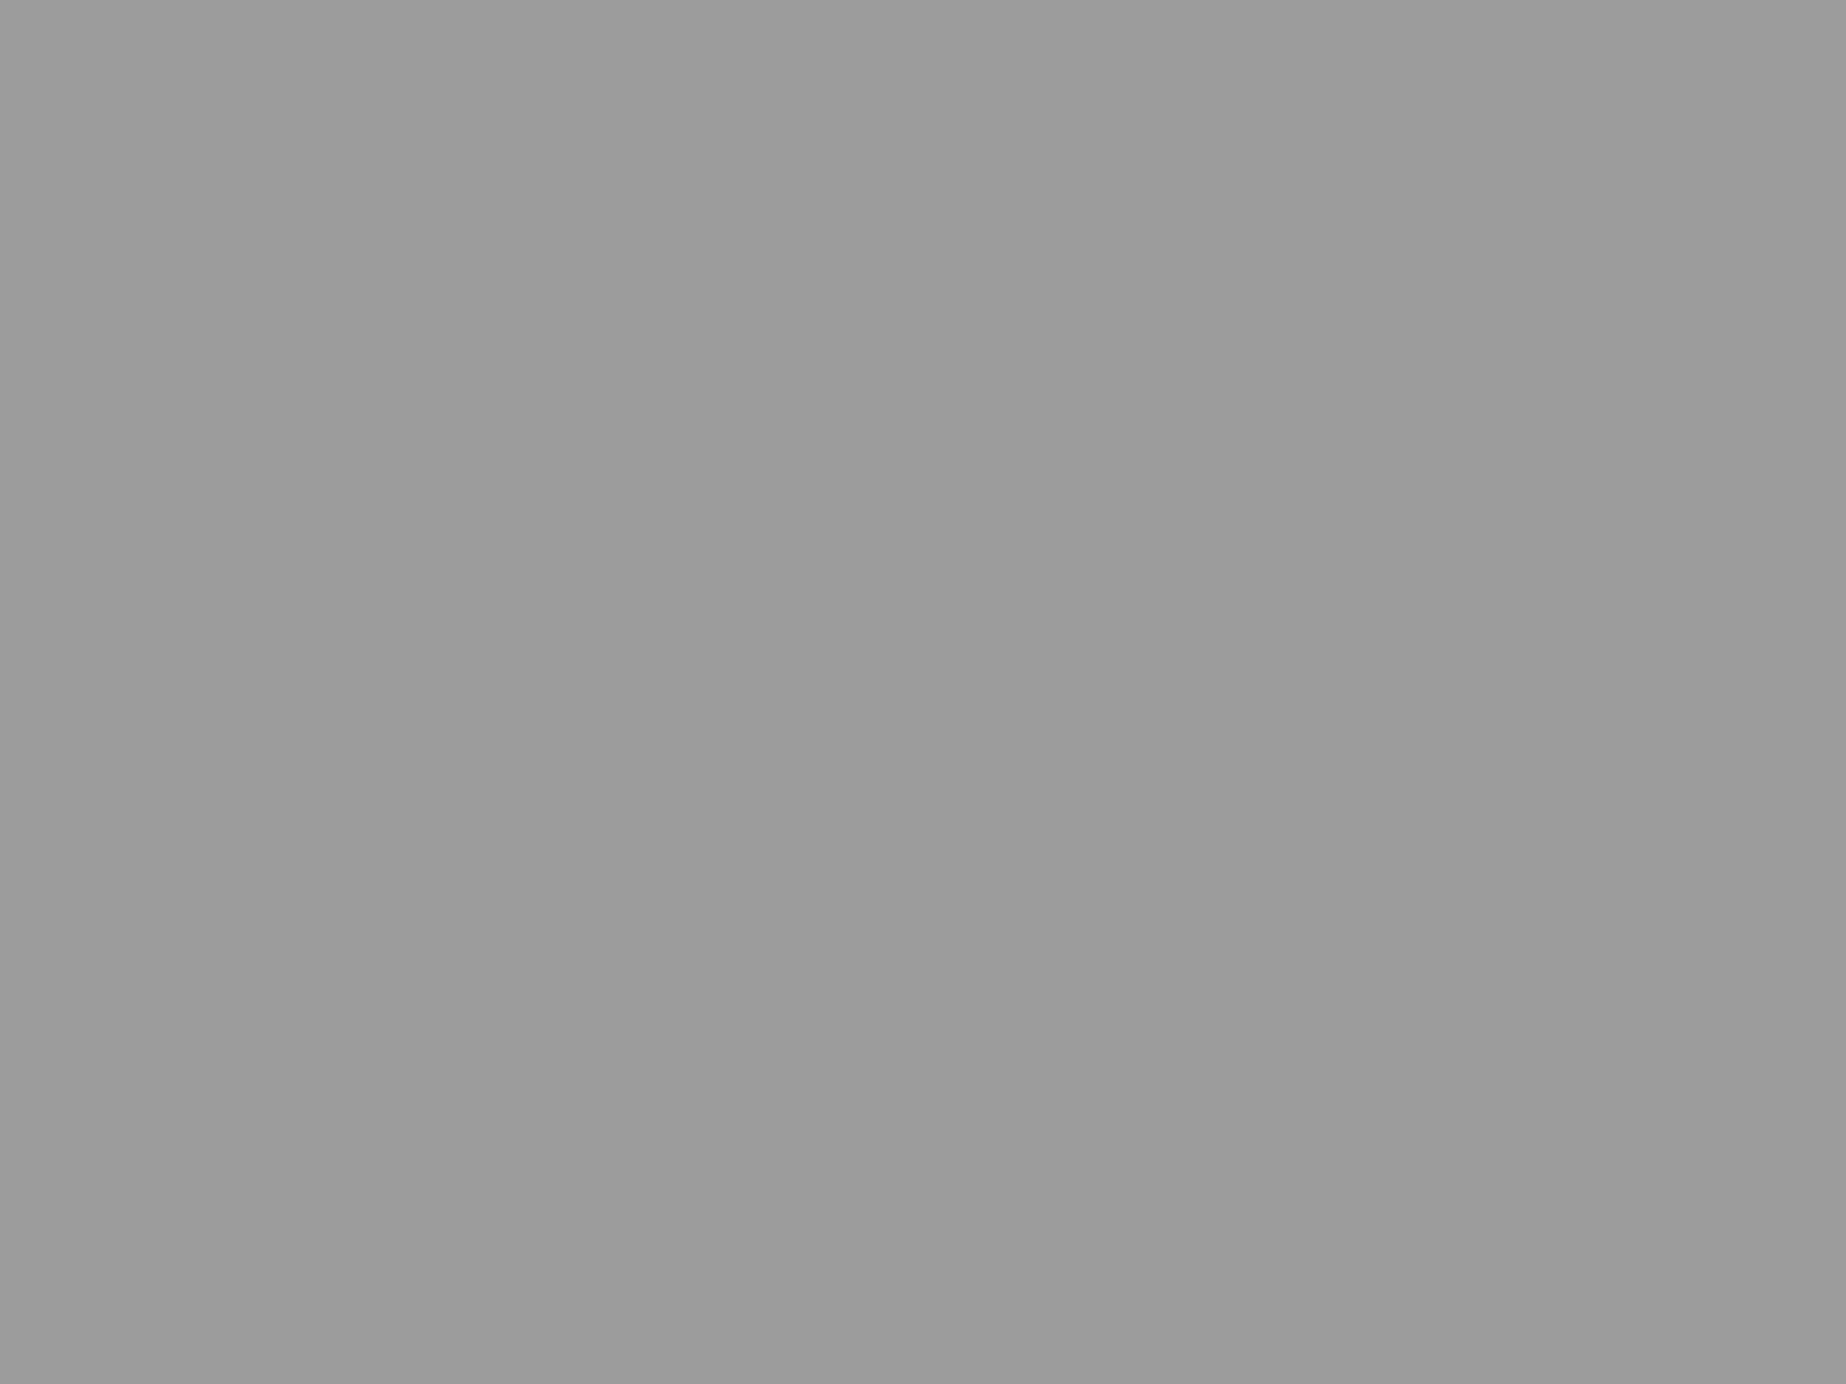 Петербургское шоссе. Ресторан «Яр». Москва, конец XIX–начало XX веков. Фотография: Мультимедиа Арт Музей, Москва